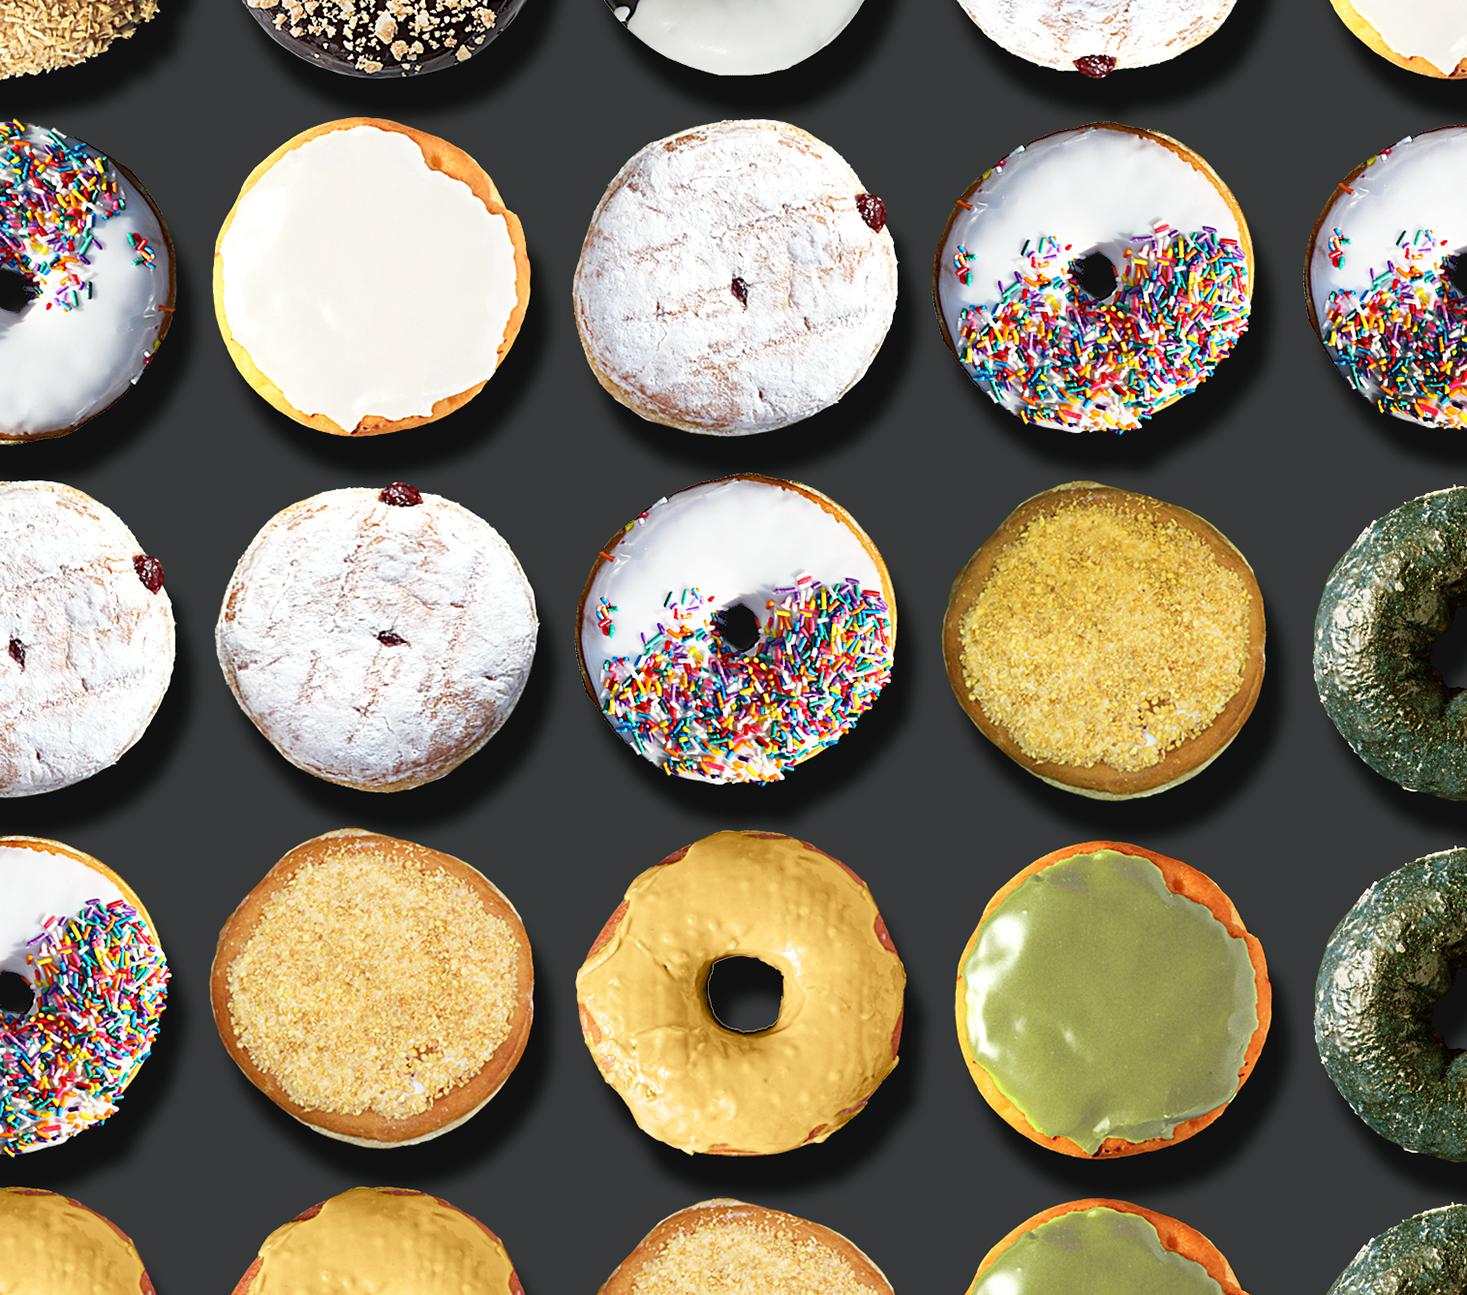 Sie haben in den sozialen Medien weltweit von den außergewöhnlichen Donut-Porträts von Candice CMC gelesen, und wir sind begeistert und stolz, ihre Arbeit zu vertreten.  Ich habe in diese Auflistung ein Bild aus dem weltweiten Social Media Buzz über